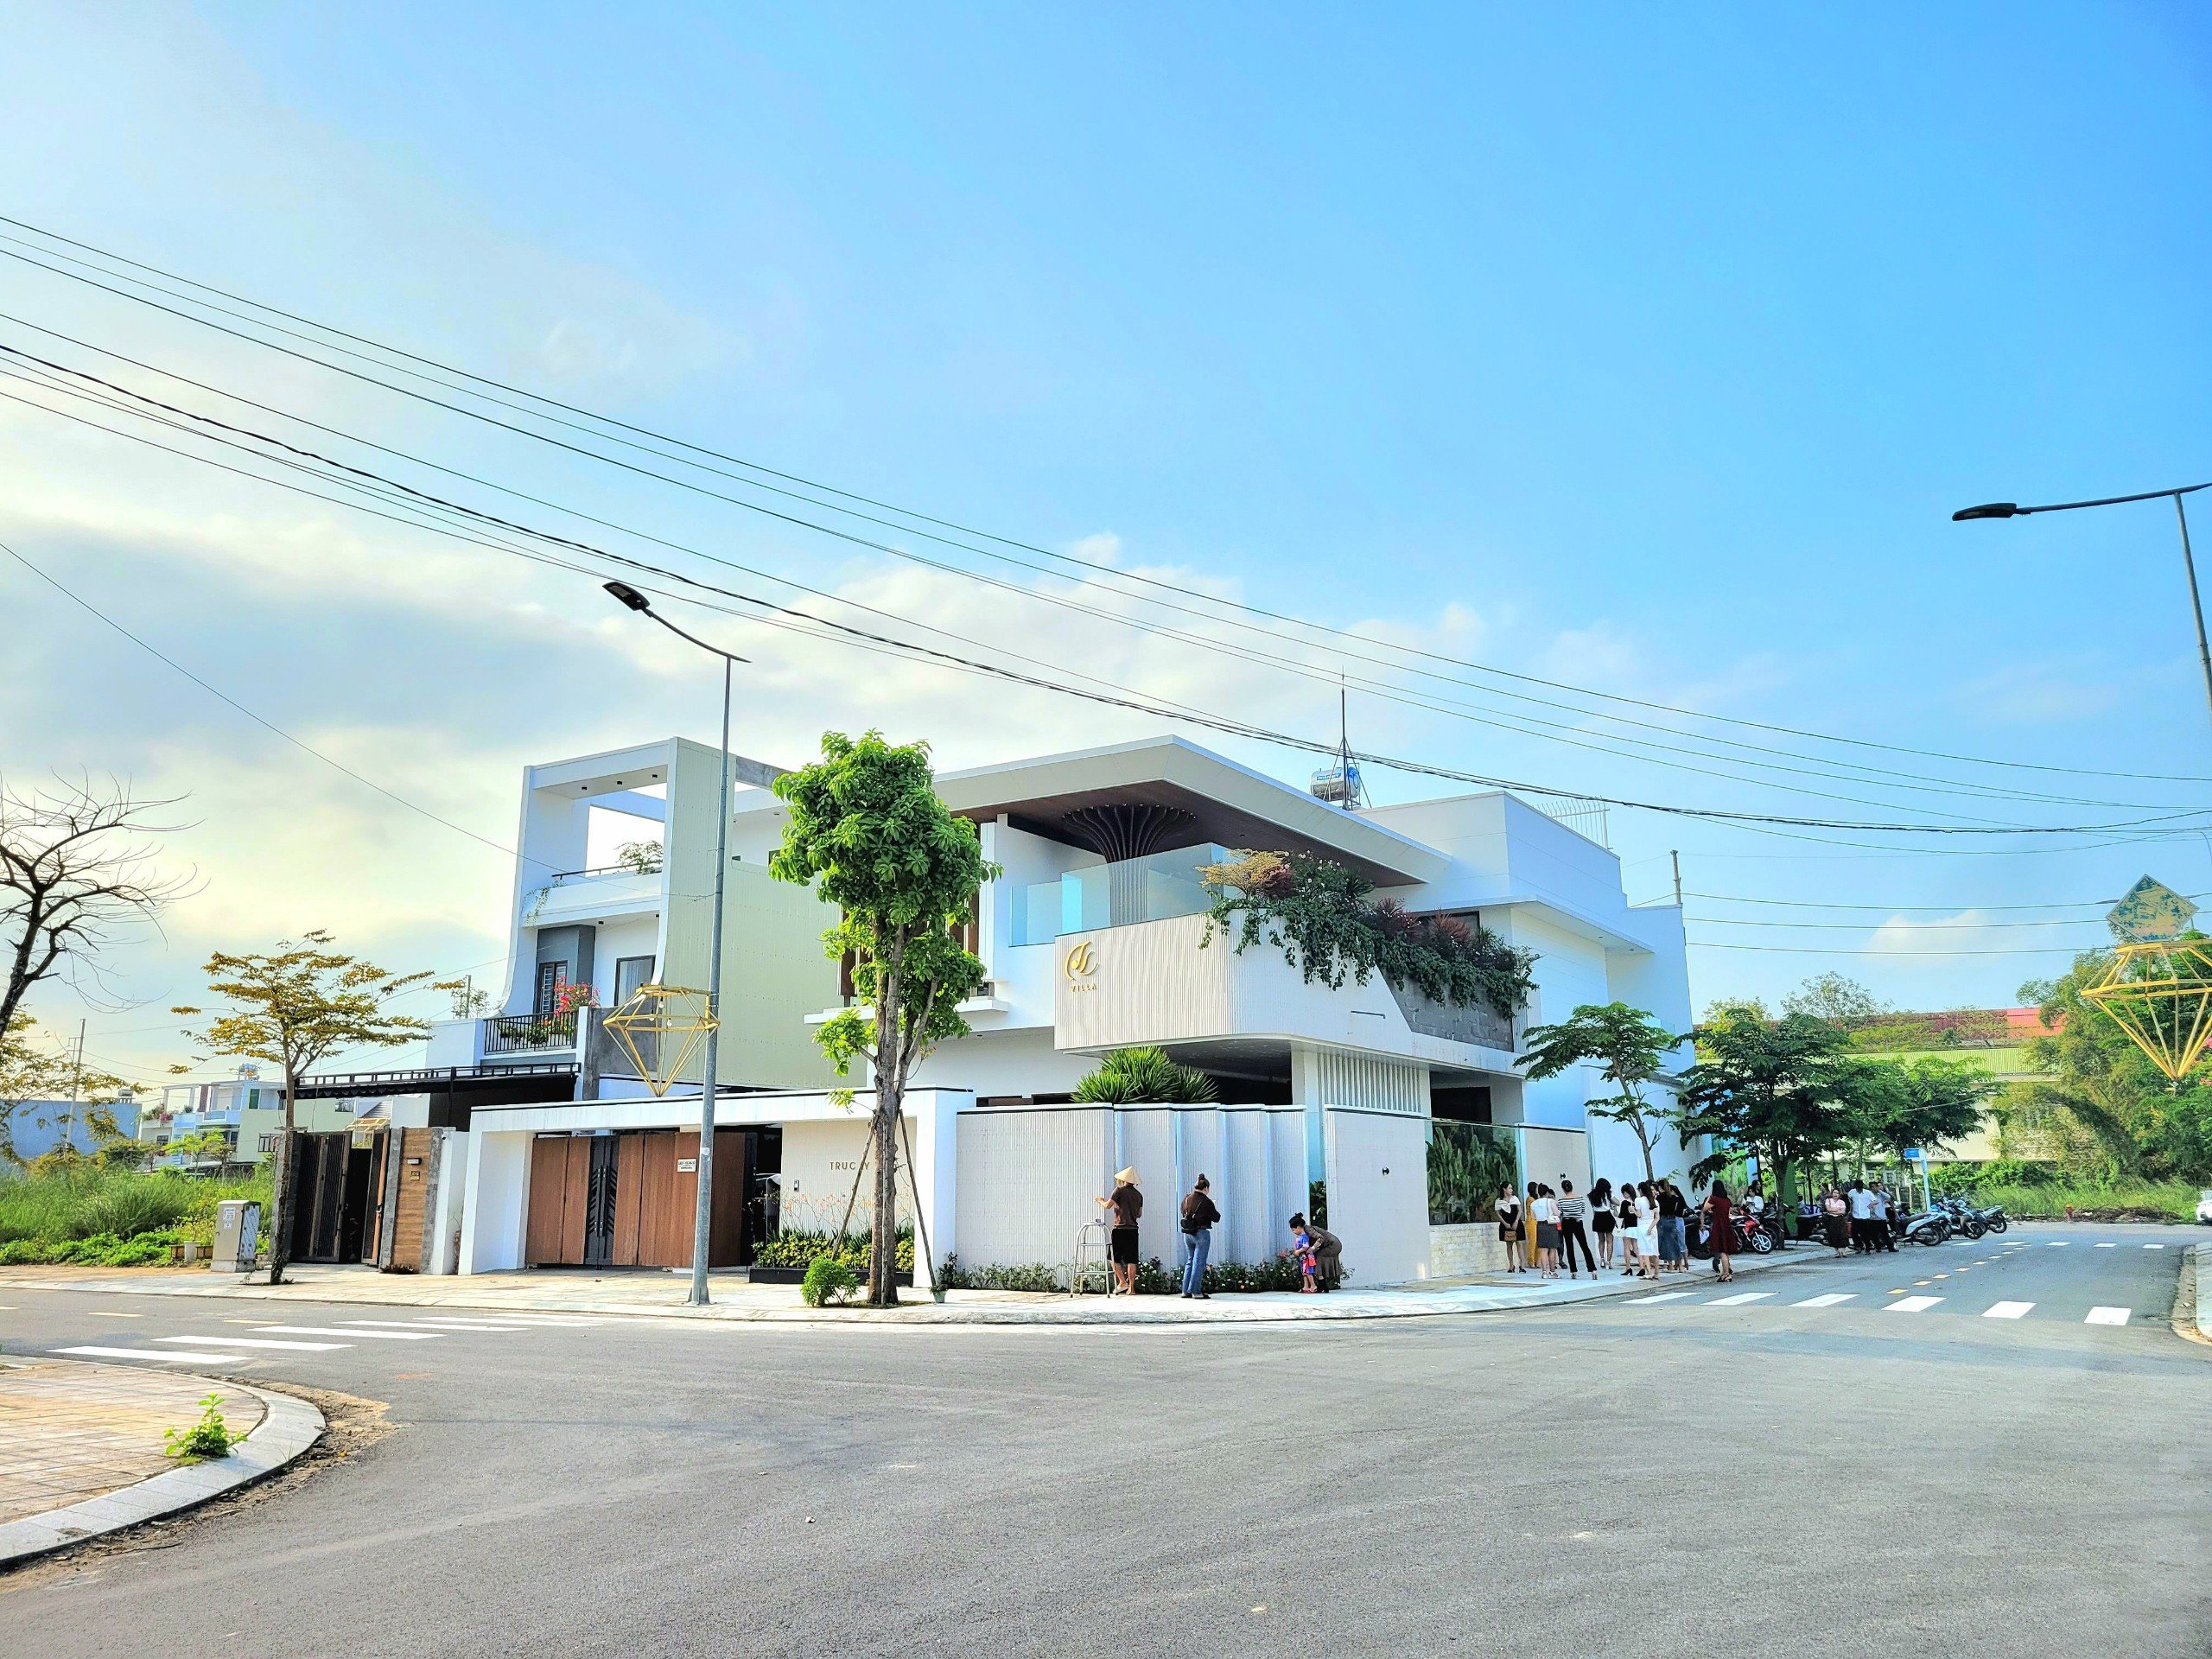 Khu dân cư Nguyễn Tri Phương và quy hoạch chiến lược của thành phố 1